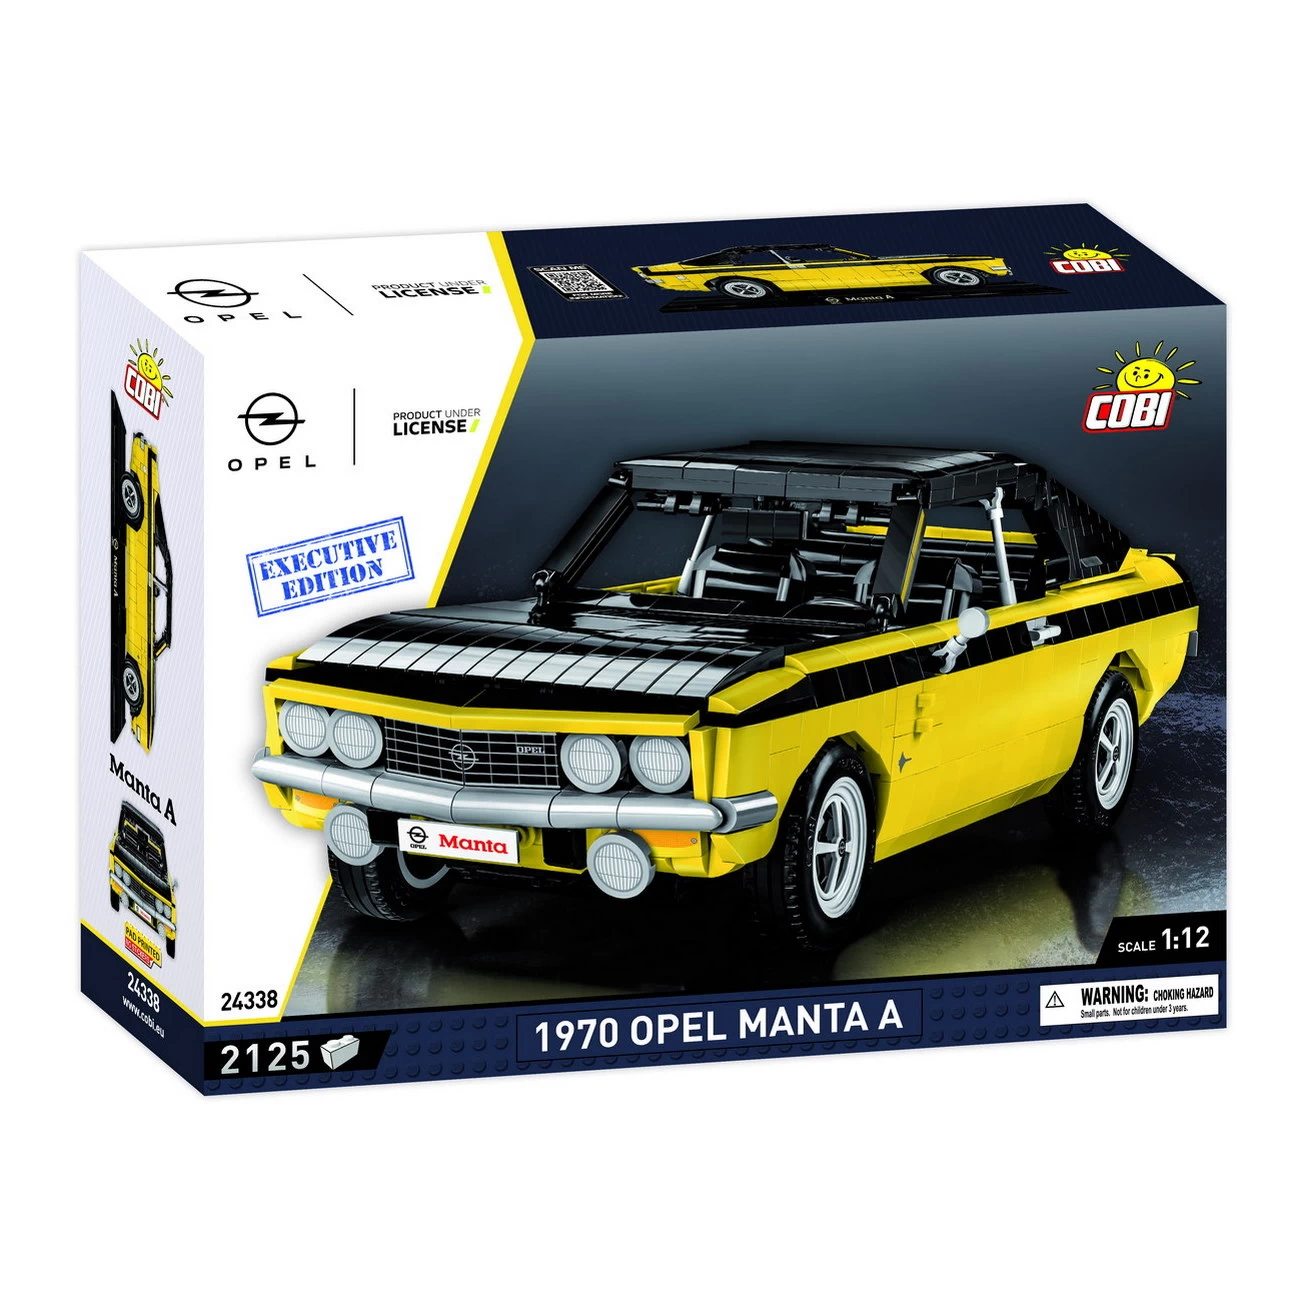 1970 Opel Manta A (24338) - Executive Edition